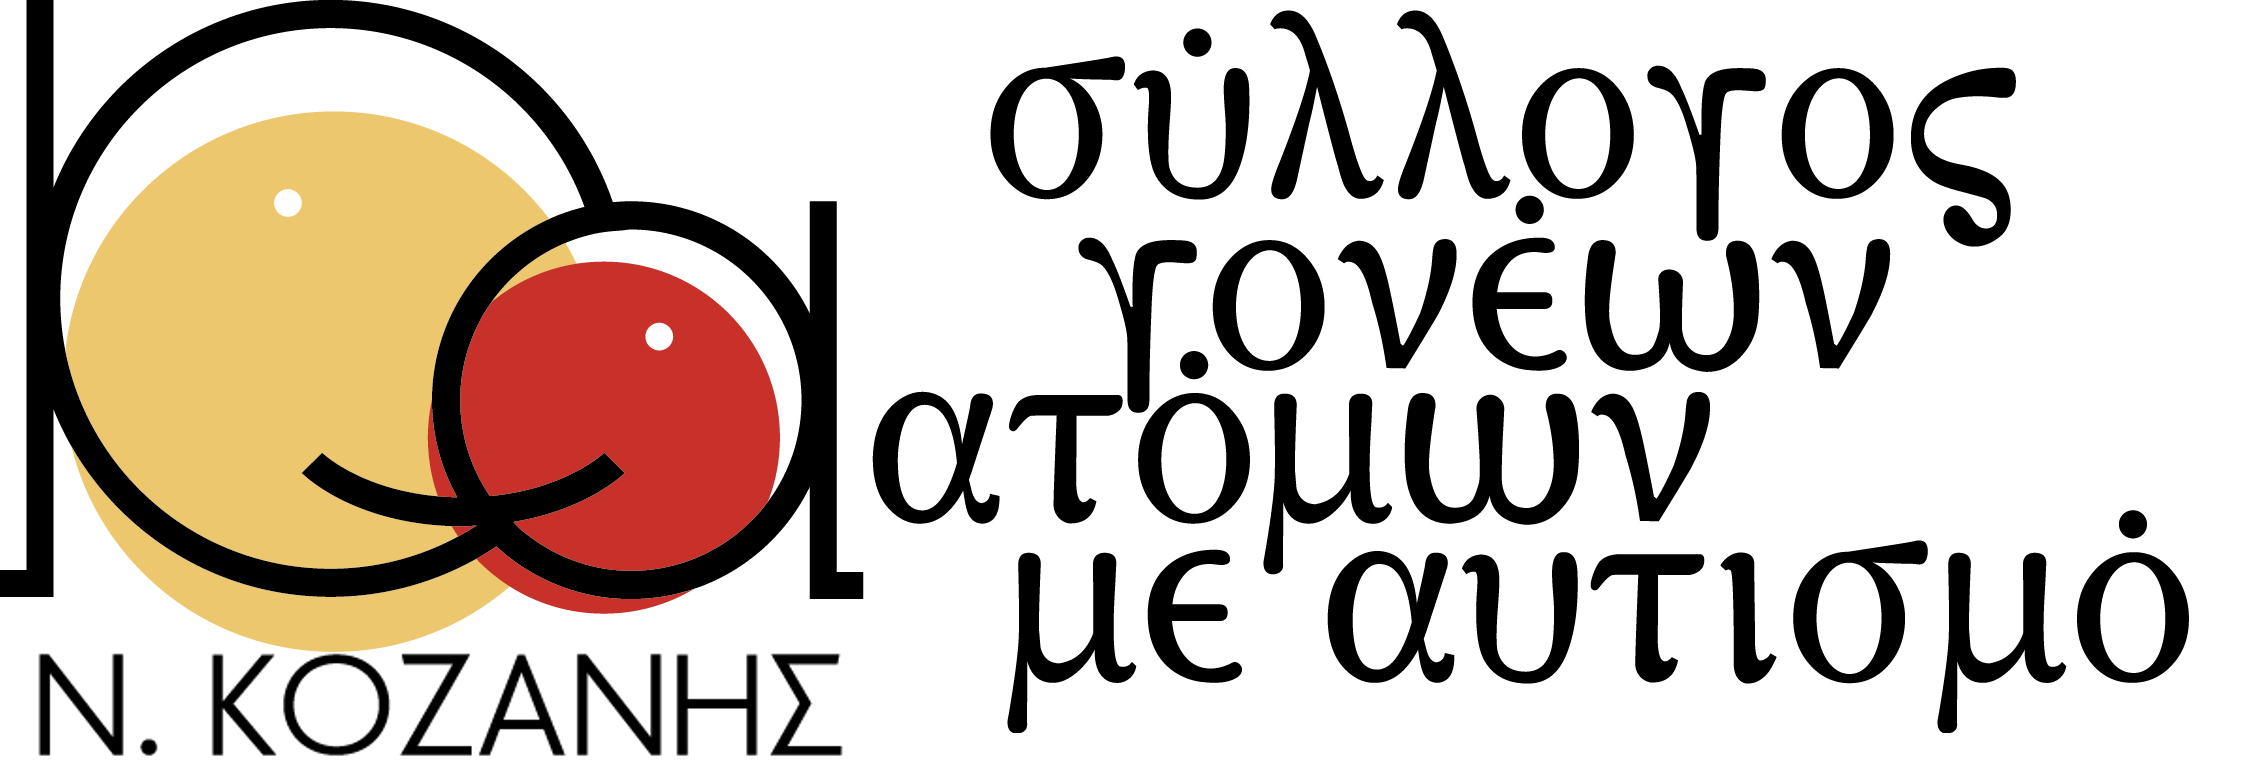 Λογότυπο του ΣΥΛΛΟΓΟΥ ΓΟΝΕΩΝ ΚΗΔΕΜΟΝΩΝ ΦΙΛΩΝ ΑΤΟΜΩΝ ΜΕ ΑΥΤΙΣΜΟ ΚΟΖΑΝΗΣ στον Οδηγό υπηρεσιών του NOESI.gr.